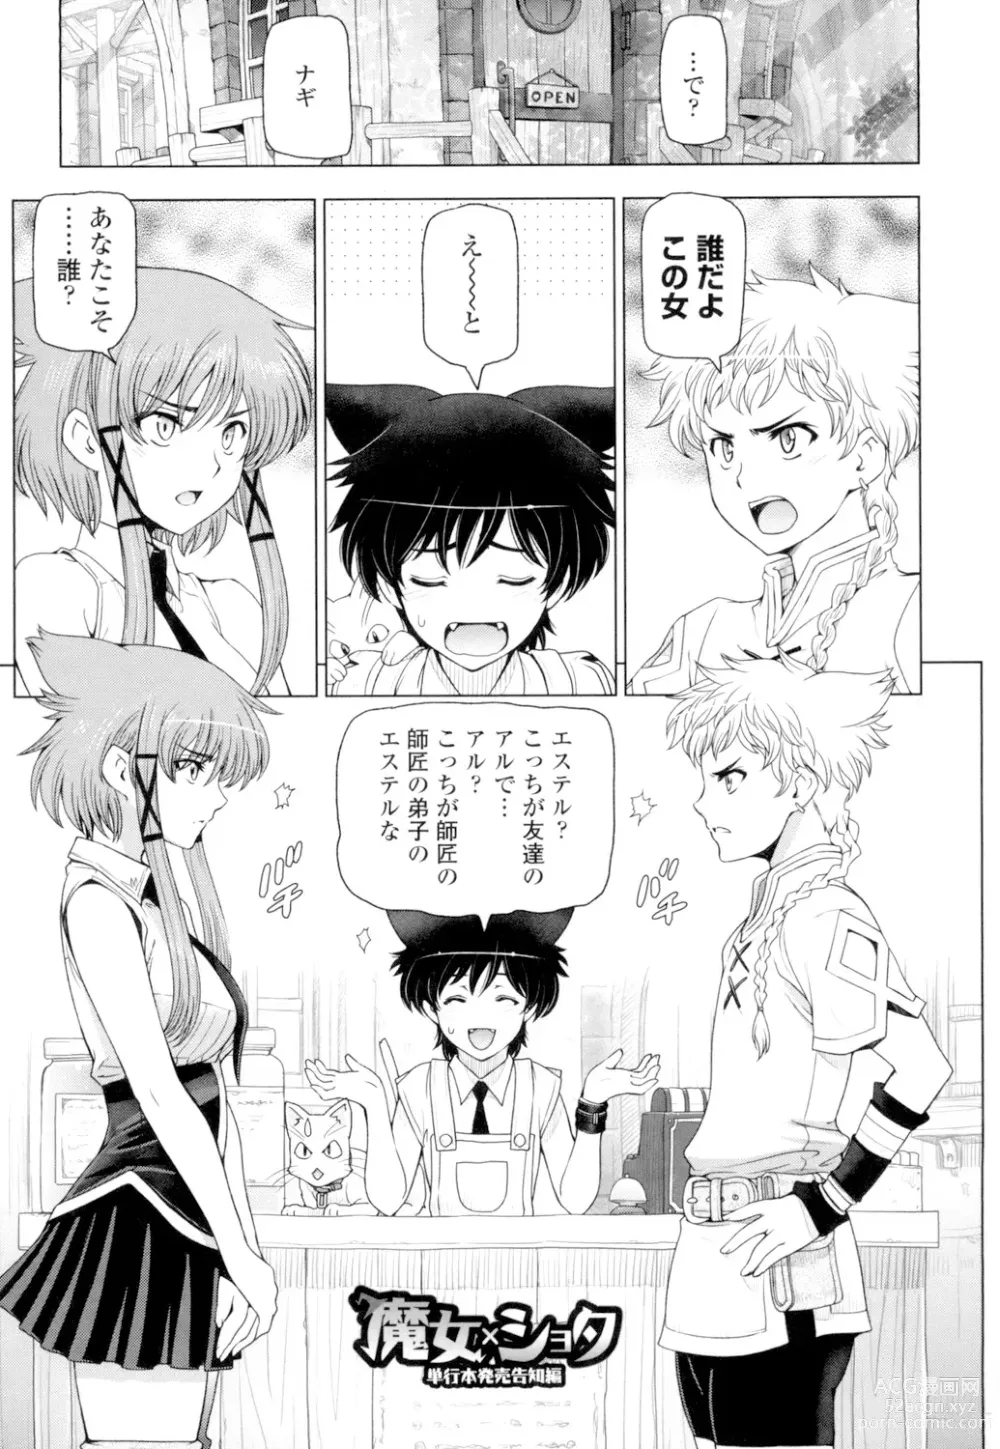 Page 207 of manga Natsu-jiru ~Ase ni Mamirete Gucchagucha~